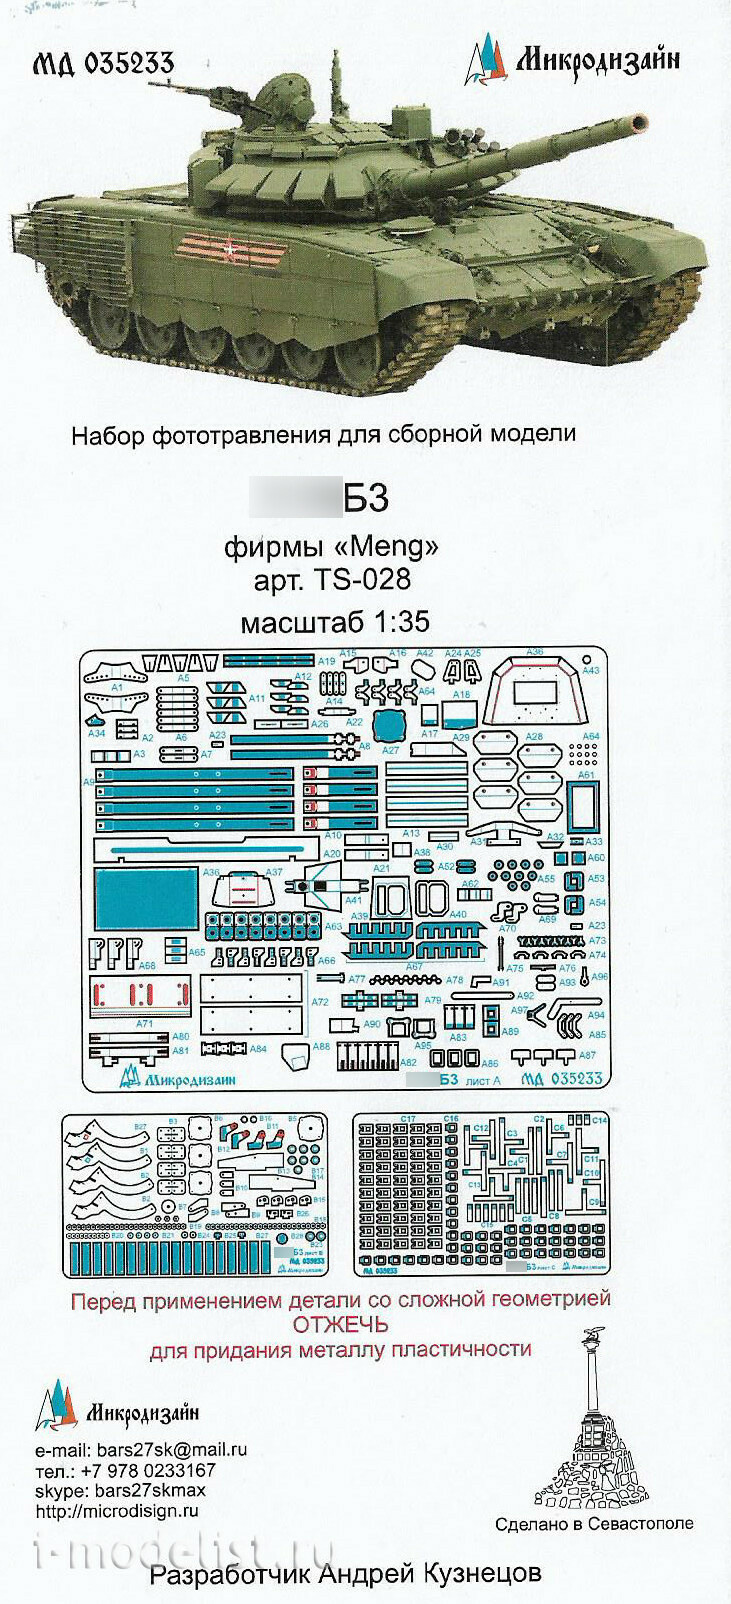 035233 Микродизайн 1/35 Набор фототравления для модели семьдесят второго танка Б3 (Meng)